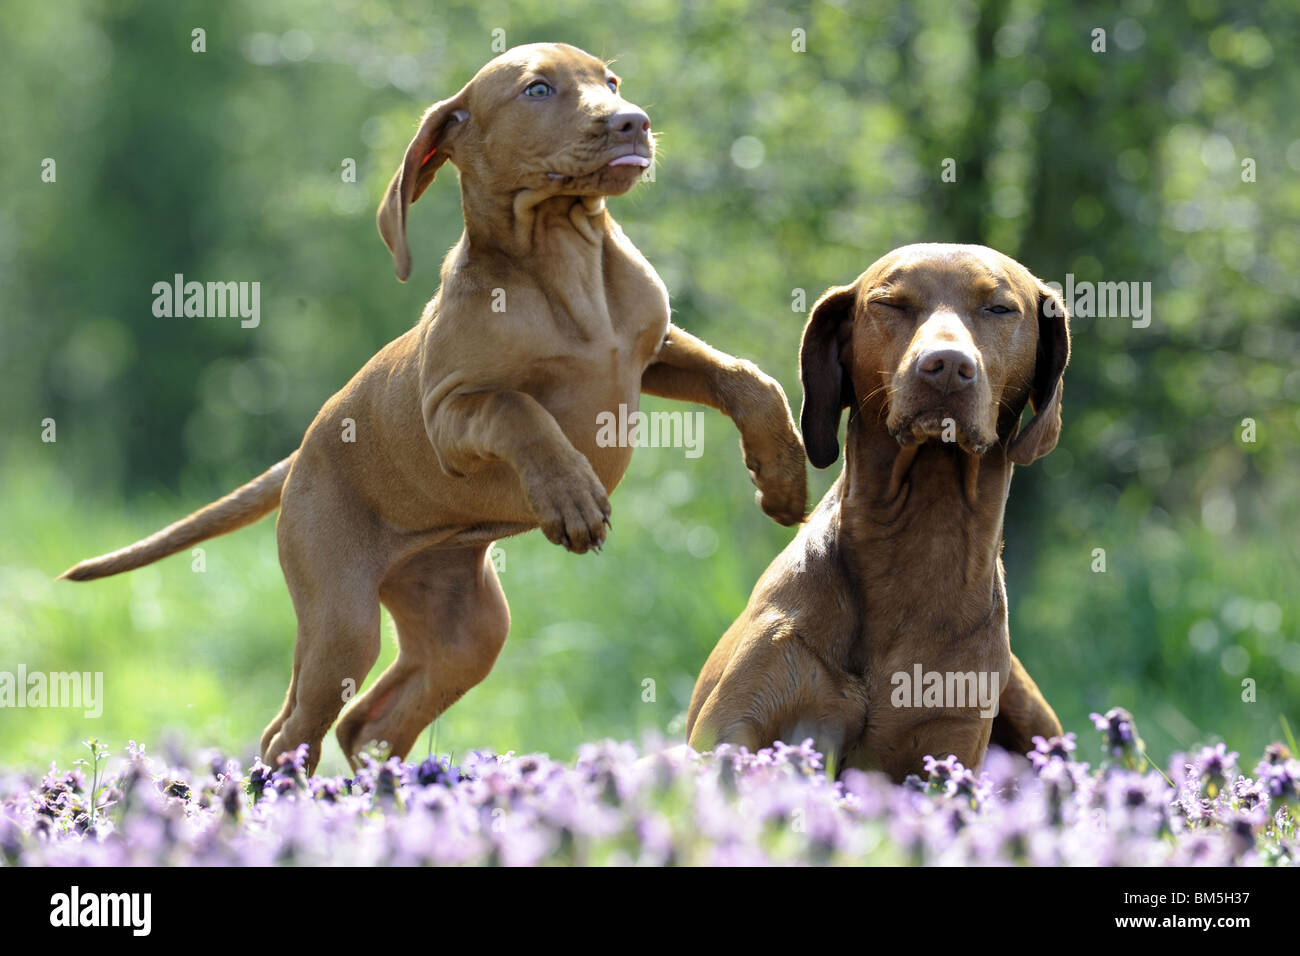 Hongrois à poil lisse Vizsla devint (Canis lupus familiaris). Puppy playing next à homme sur une prairie en fleurs. Banque D'Images